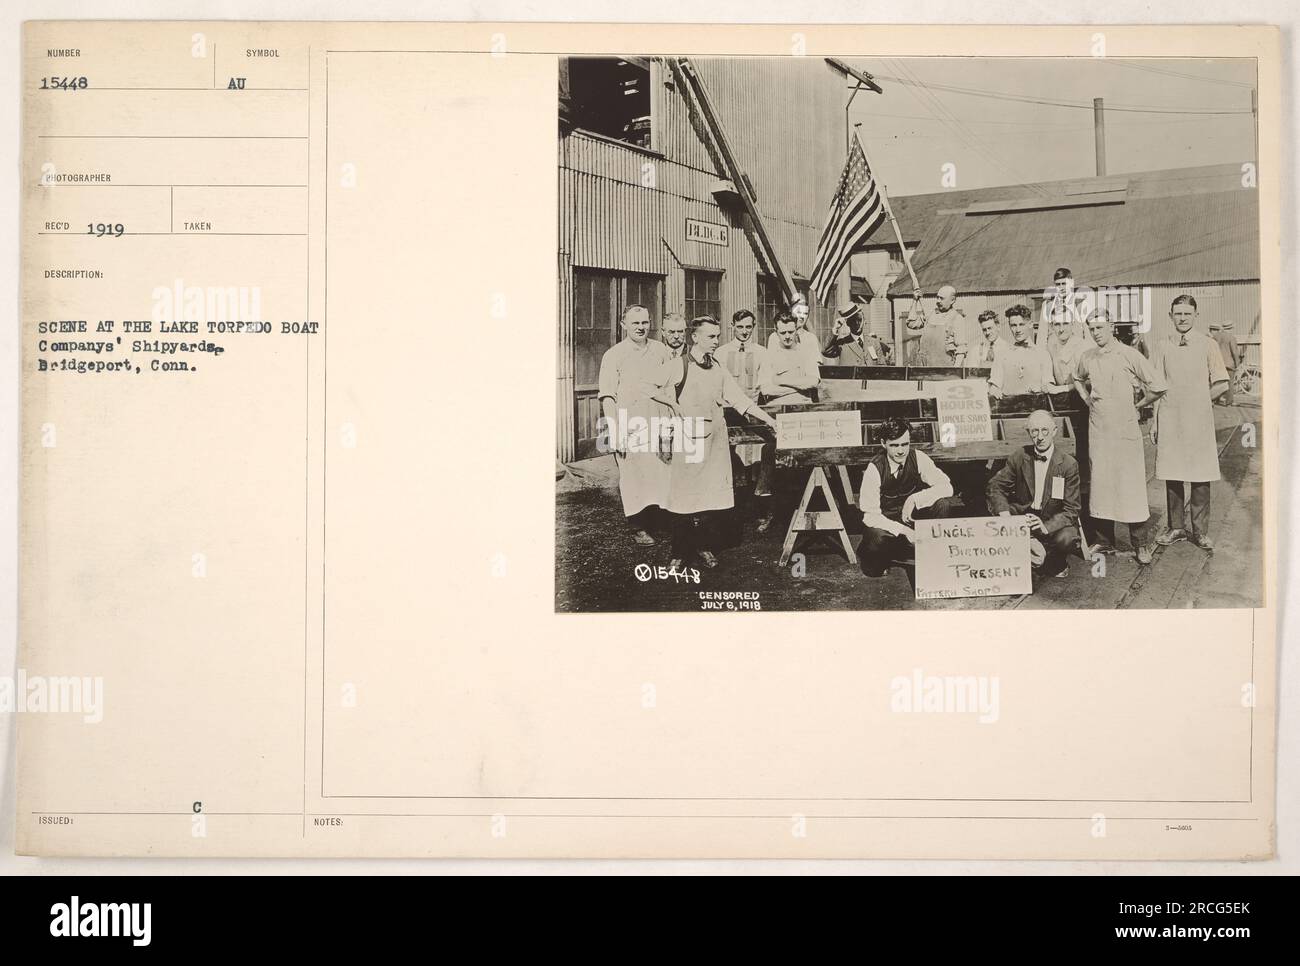 Ein Foto, das 1919 auf den Werften der Lake Torpedo Boat Company in Bridgeport, Connecticut, aufgenommen wurde. Das Bild zeigt eine Szene von Arbeitern, die an Schiffbauaktivitäten beteiligt sind. Das Foto wurde am 8. Juli 1918 zensiert. Die Bedeutung des Bildes hängt mit dem Beitrag der Werft zum Militär im Ersten Weltkrieg zusammen Stockfoto